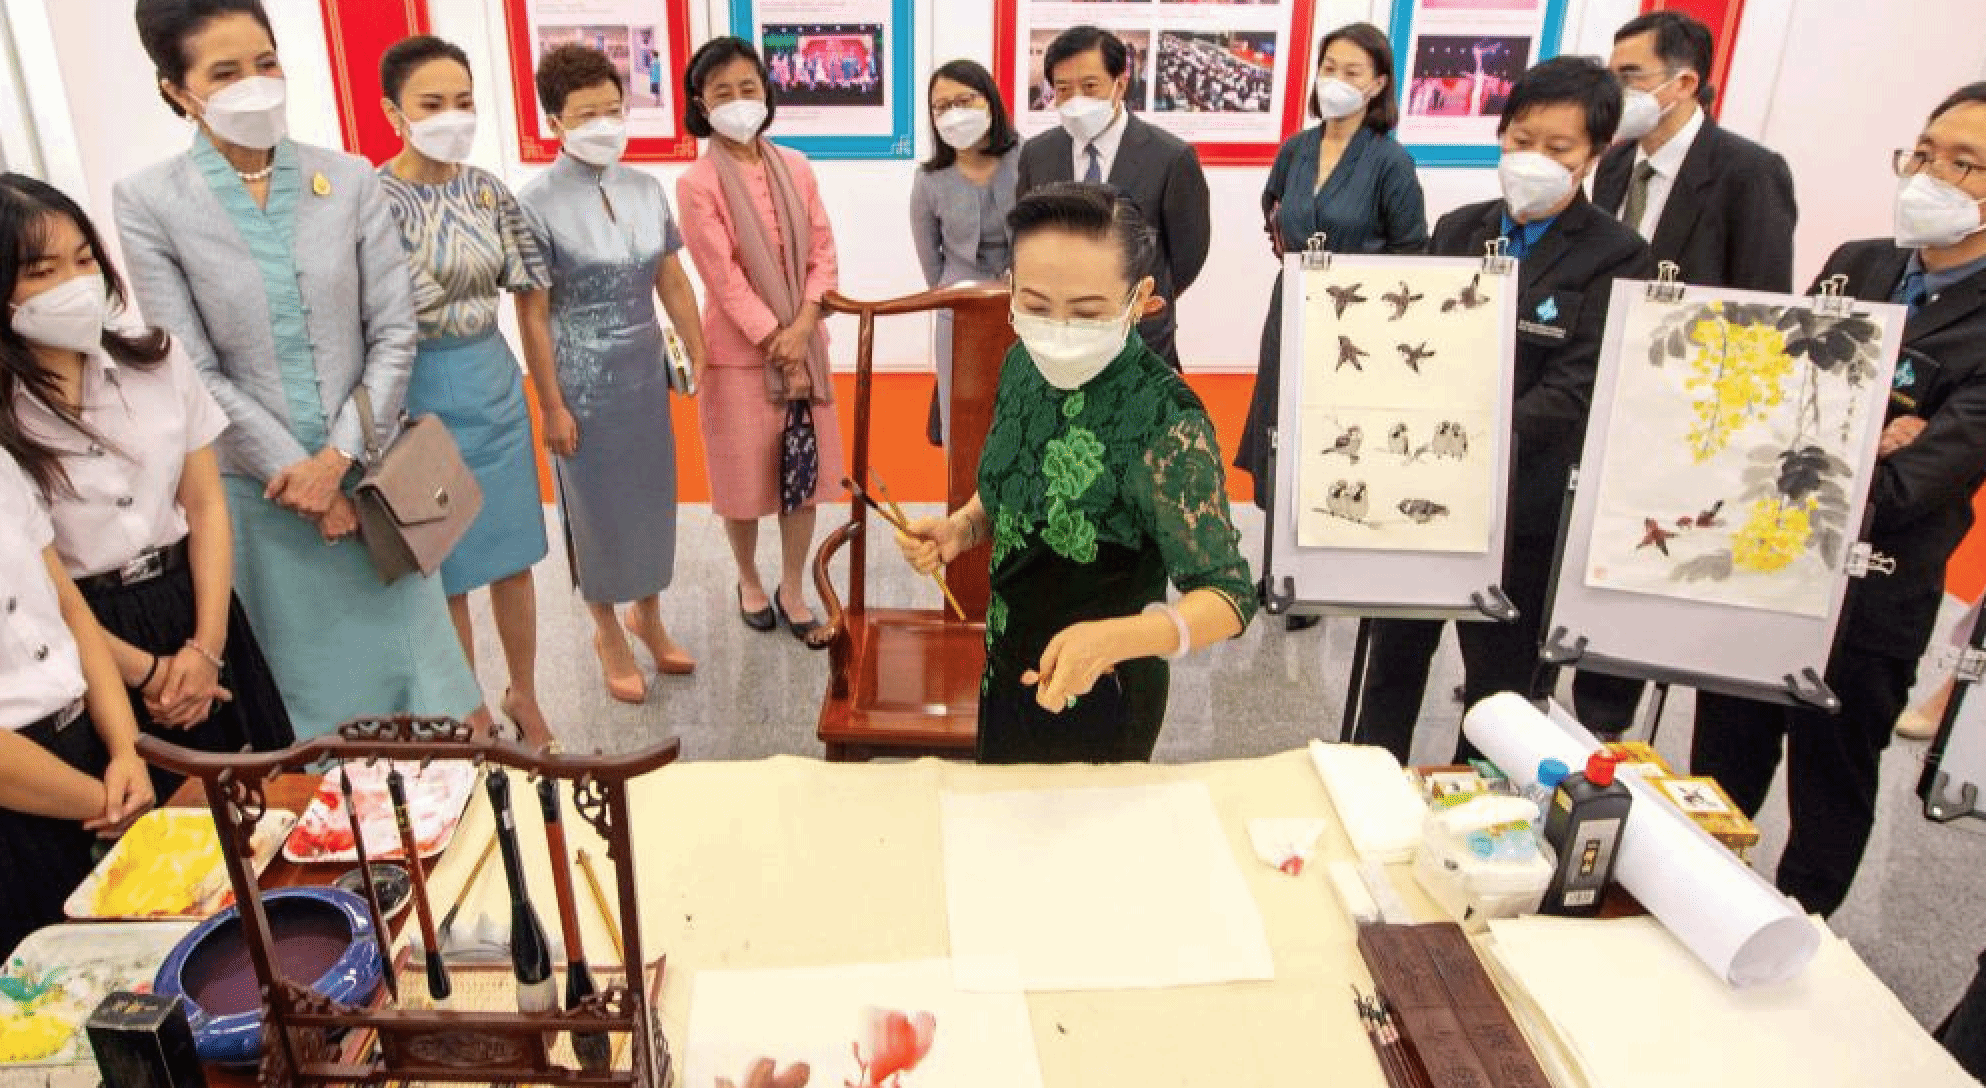 曼谷举办“中国影像节”展映暨中国文化体验活动